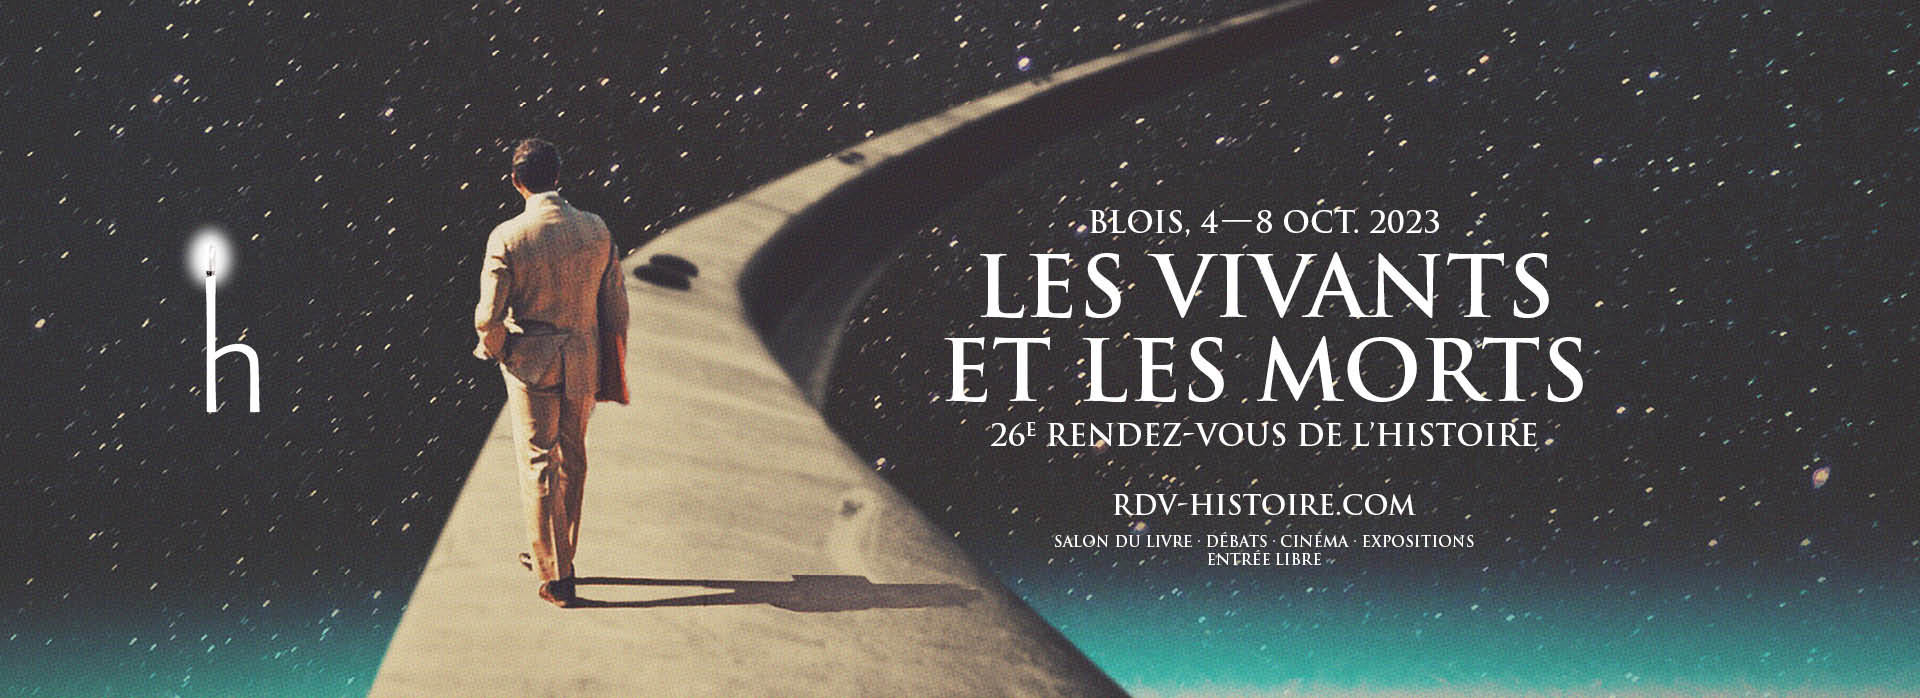 Les vivants et les morts, 26e rendez-vous de l'histoire. Blois, 4-8 oct. 2023.